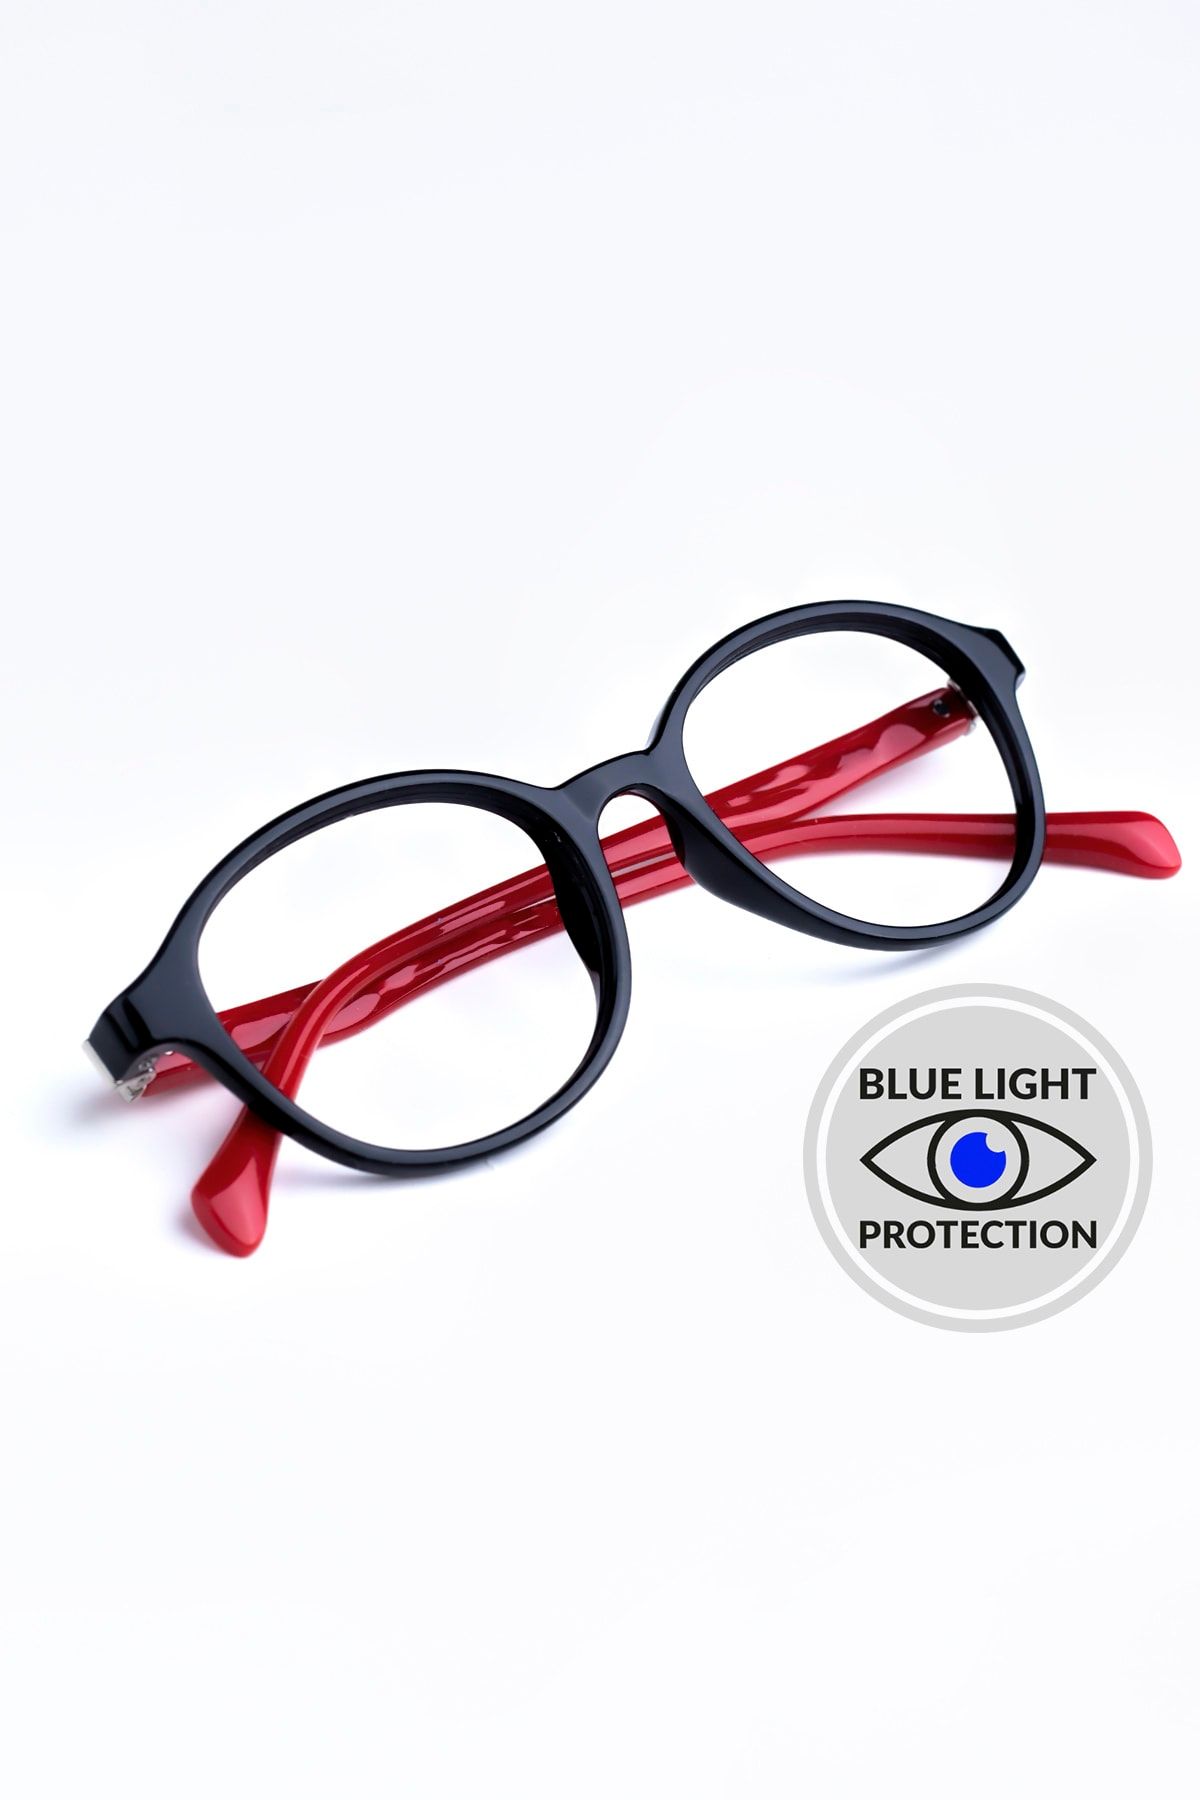 Focus On Siyah Kırmızı 2-5 Yaş Mavi Işık Filtreli Çocuk Ekran Gözlüğü